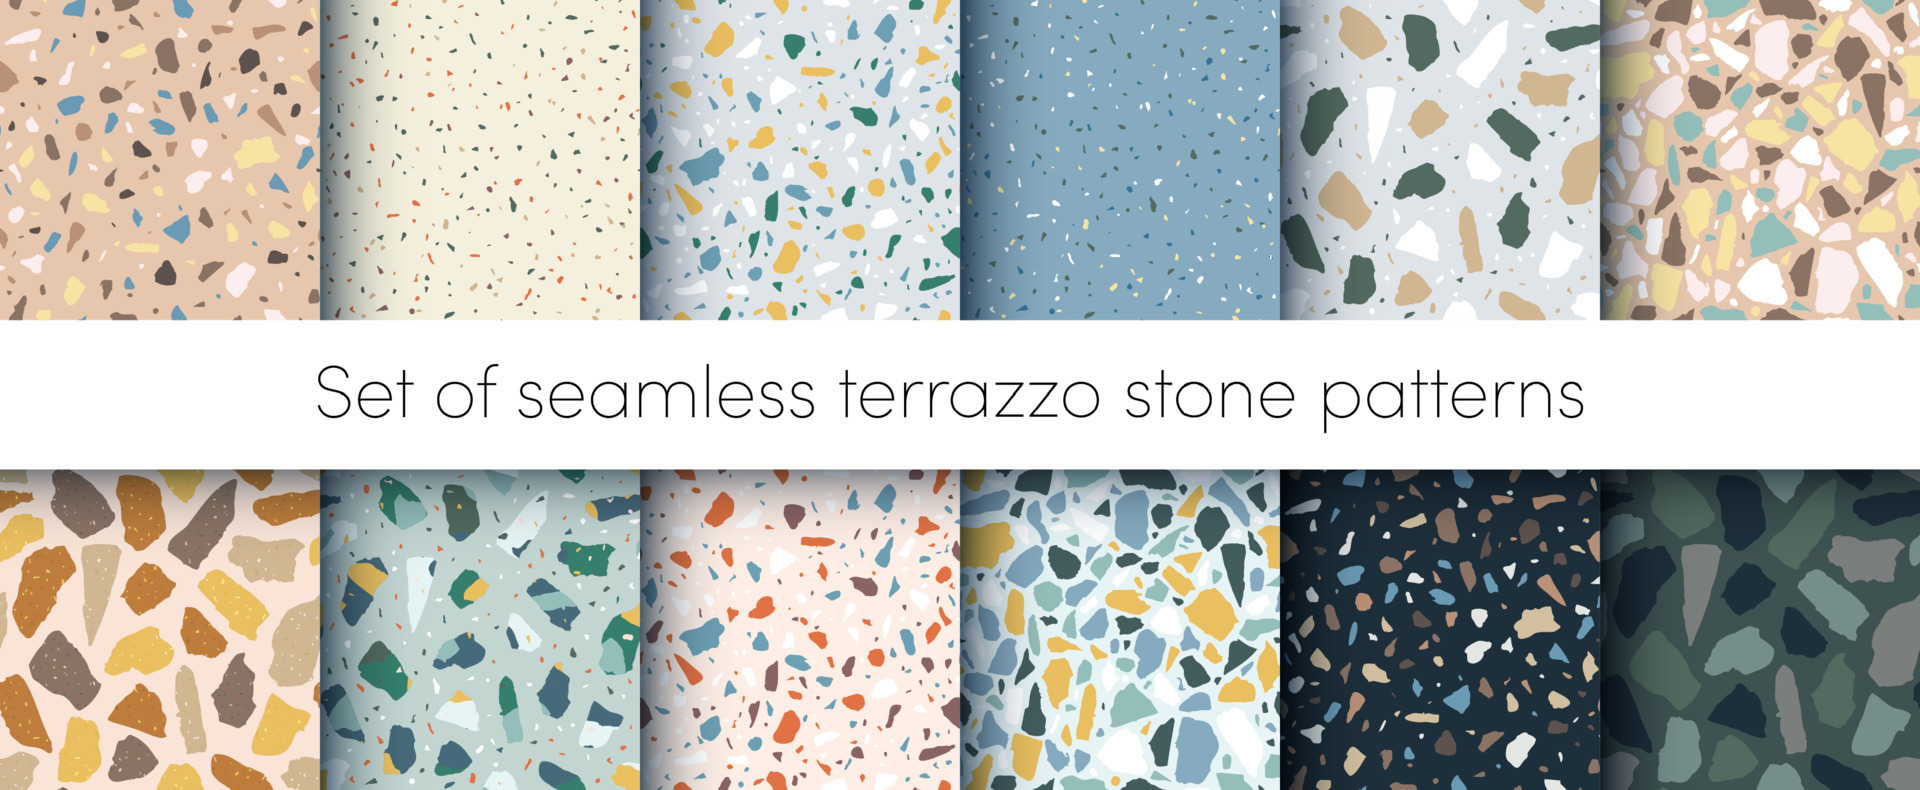 Hou op Handschrift slachtoffers vector terrazzo vloeren naadloos patronen set. abstract natuurlijk kleur  Italiaans getextureerde steen oppervlak, terrazzo concreet. klassiek graniet  natuurlijk terrazzo vloer. interieur ontwerp achtergrond verzameling  23120929 Vectorkunst bij Vecteezy